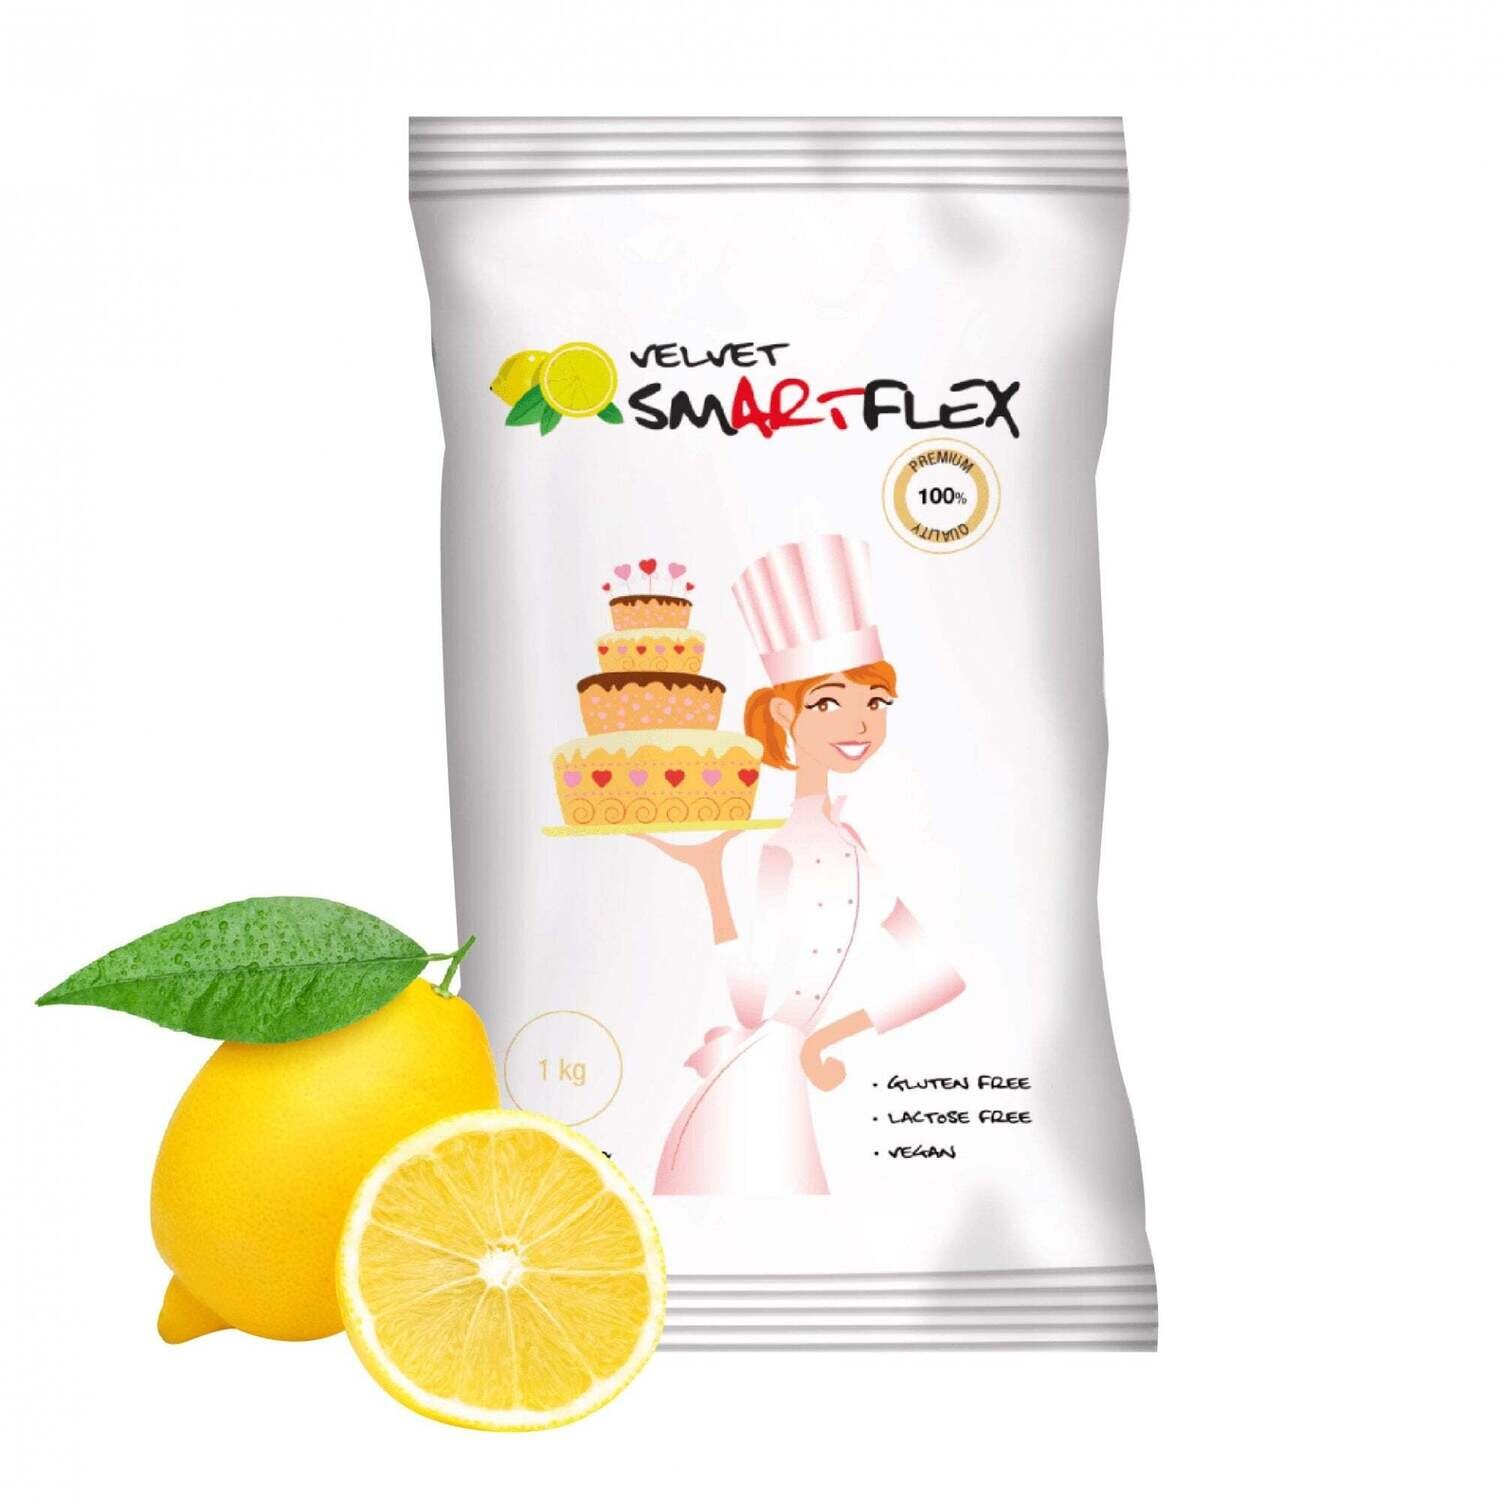 SmartFlex Velvet Lemon 1 kg - White